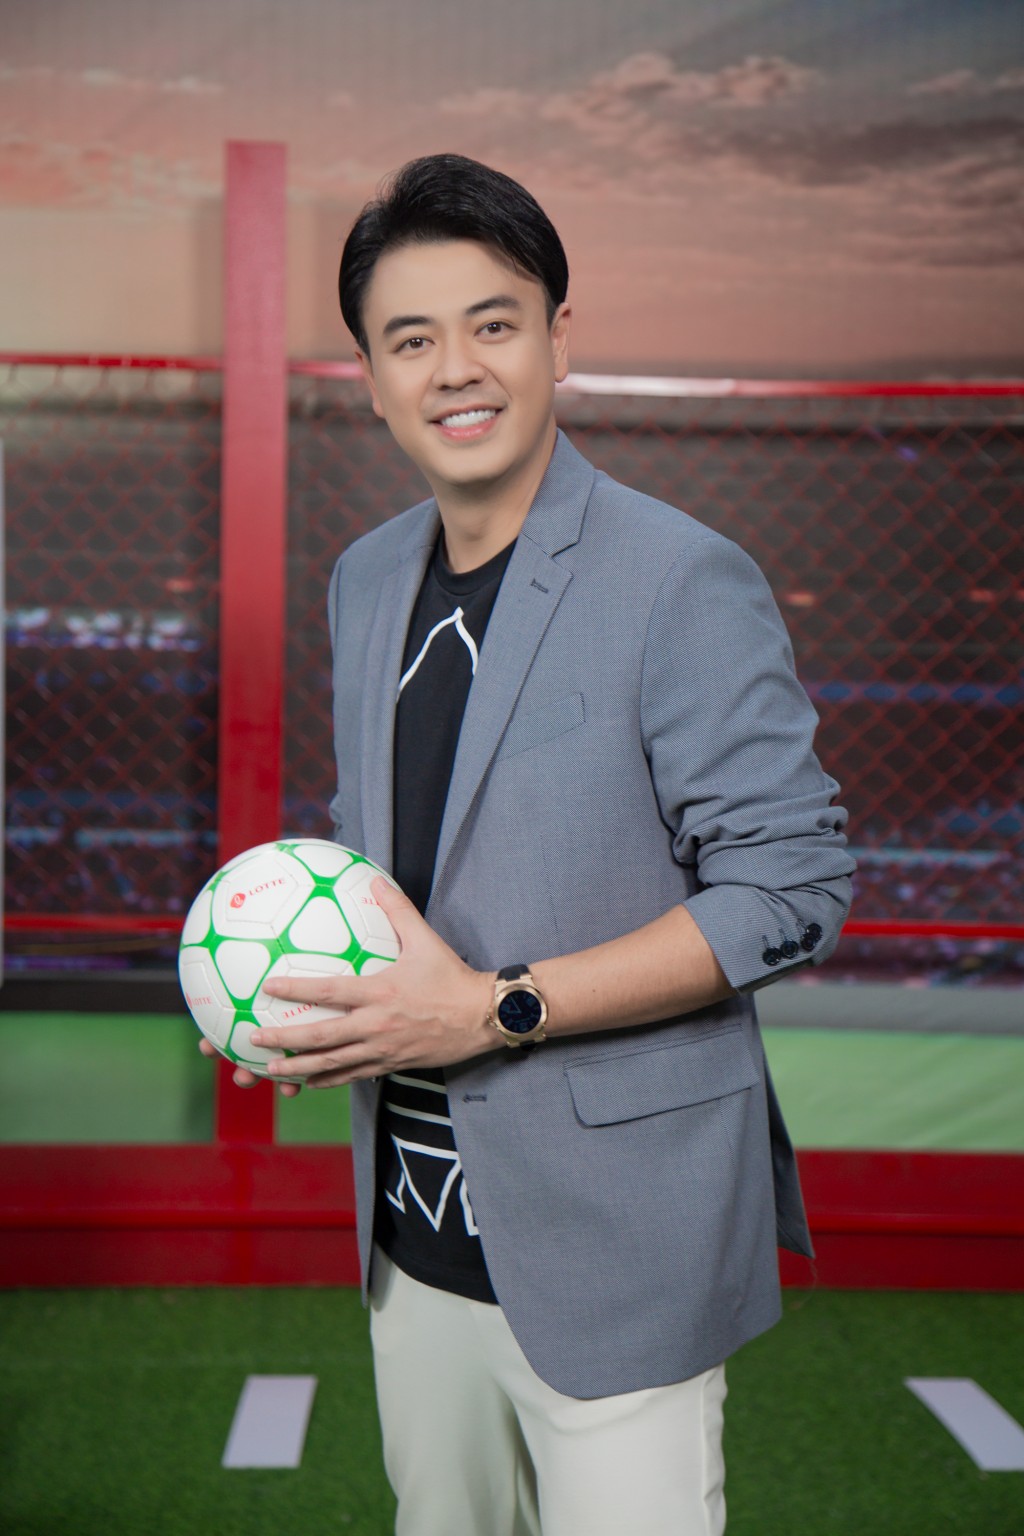 Tiêu chí chọn top 10 cầu thủ nhí của HLV Nguyễn Hồng Sơn và Vũ Như Thành - Ảnh 7.